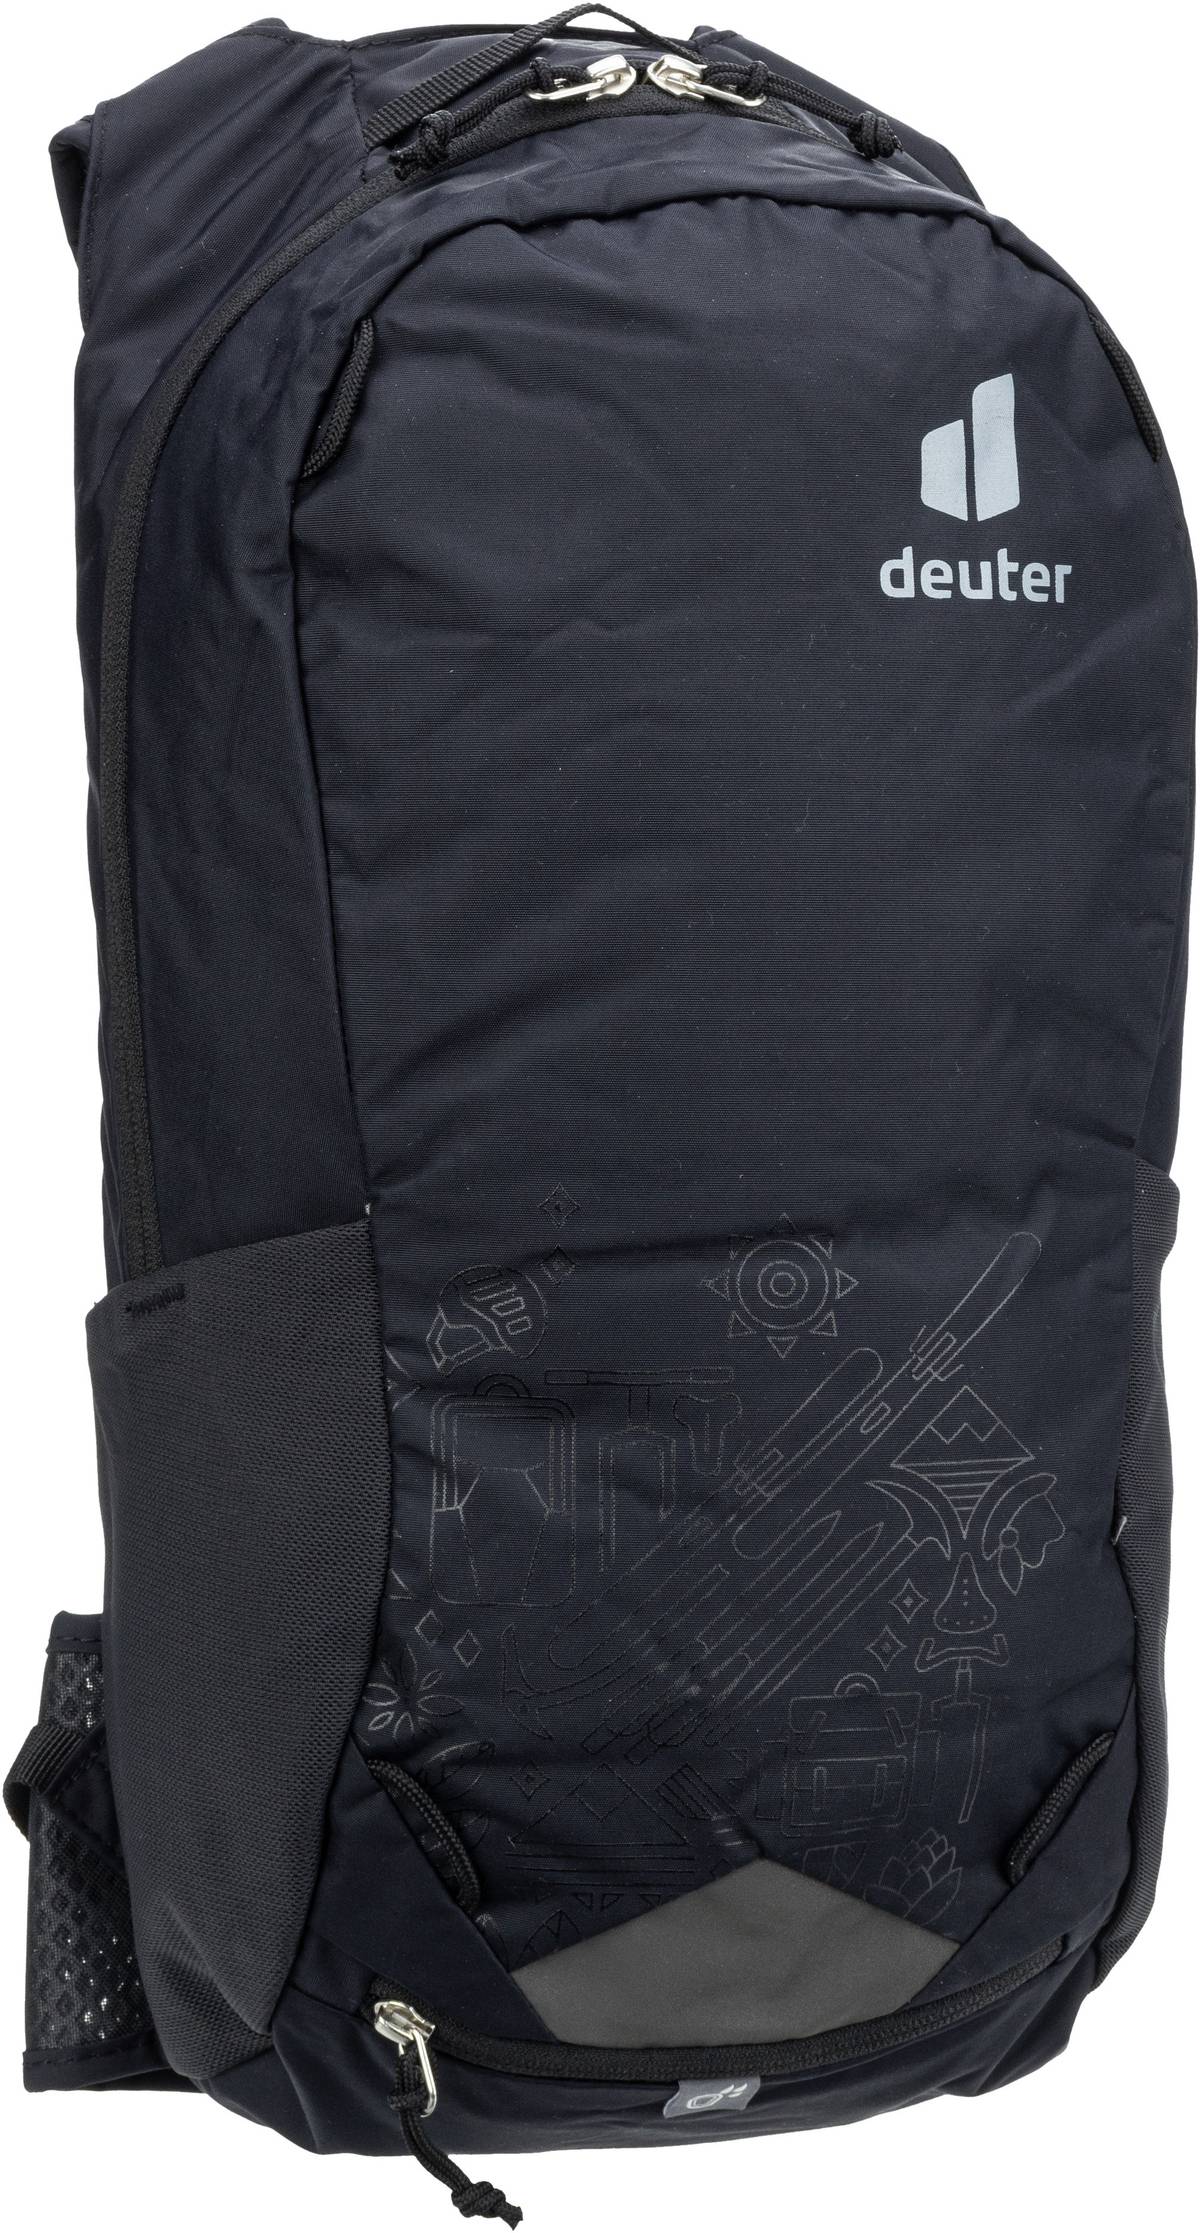 Deuter Deuter Race 12 125th Anniversary Edition in Schwarz (12 Liter), Rucksack / Backpack